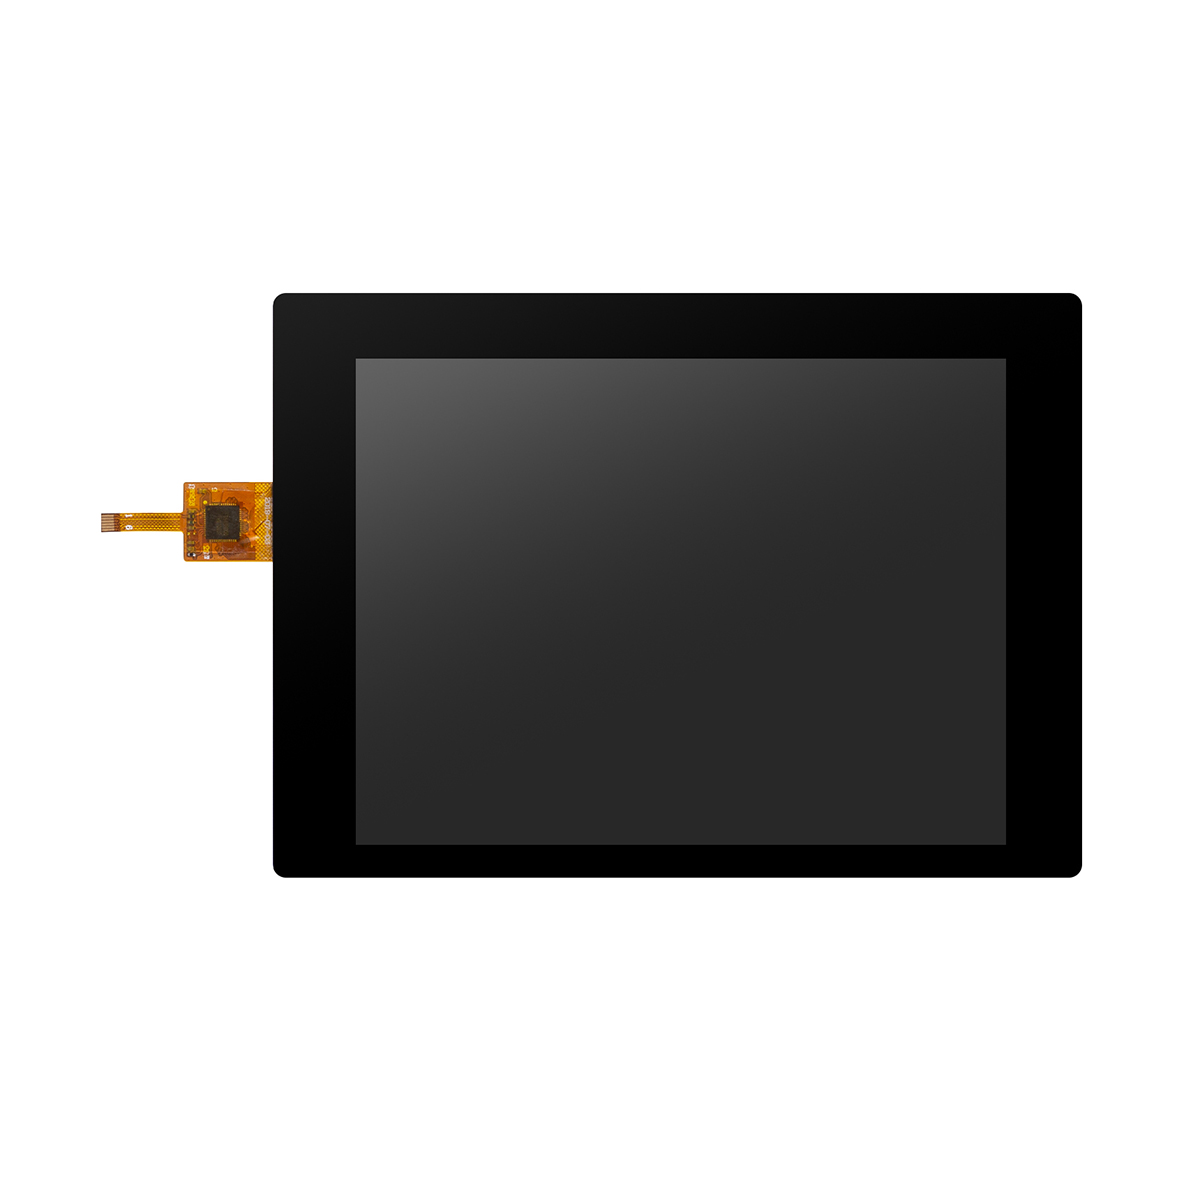 د 5.7 انچ شیشې پینل LCD ټچ سکرین مناسب ډیزاین